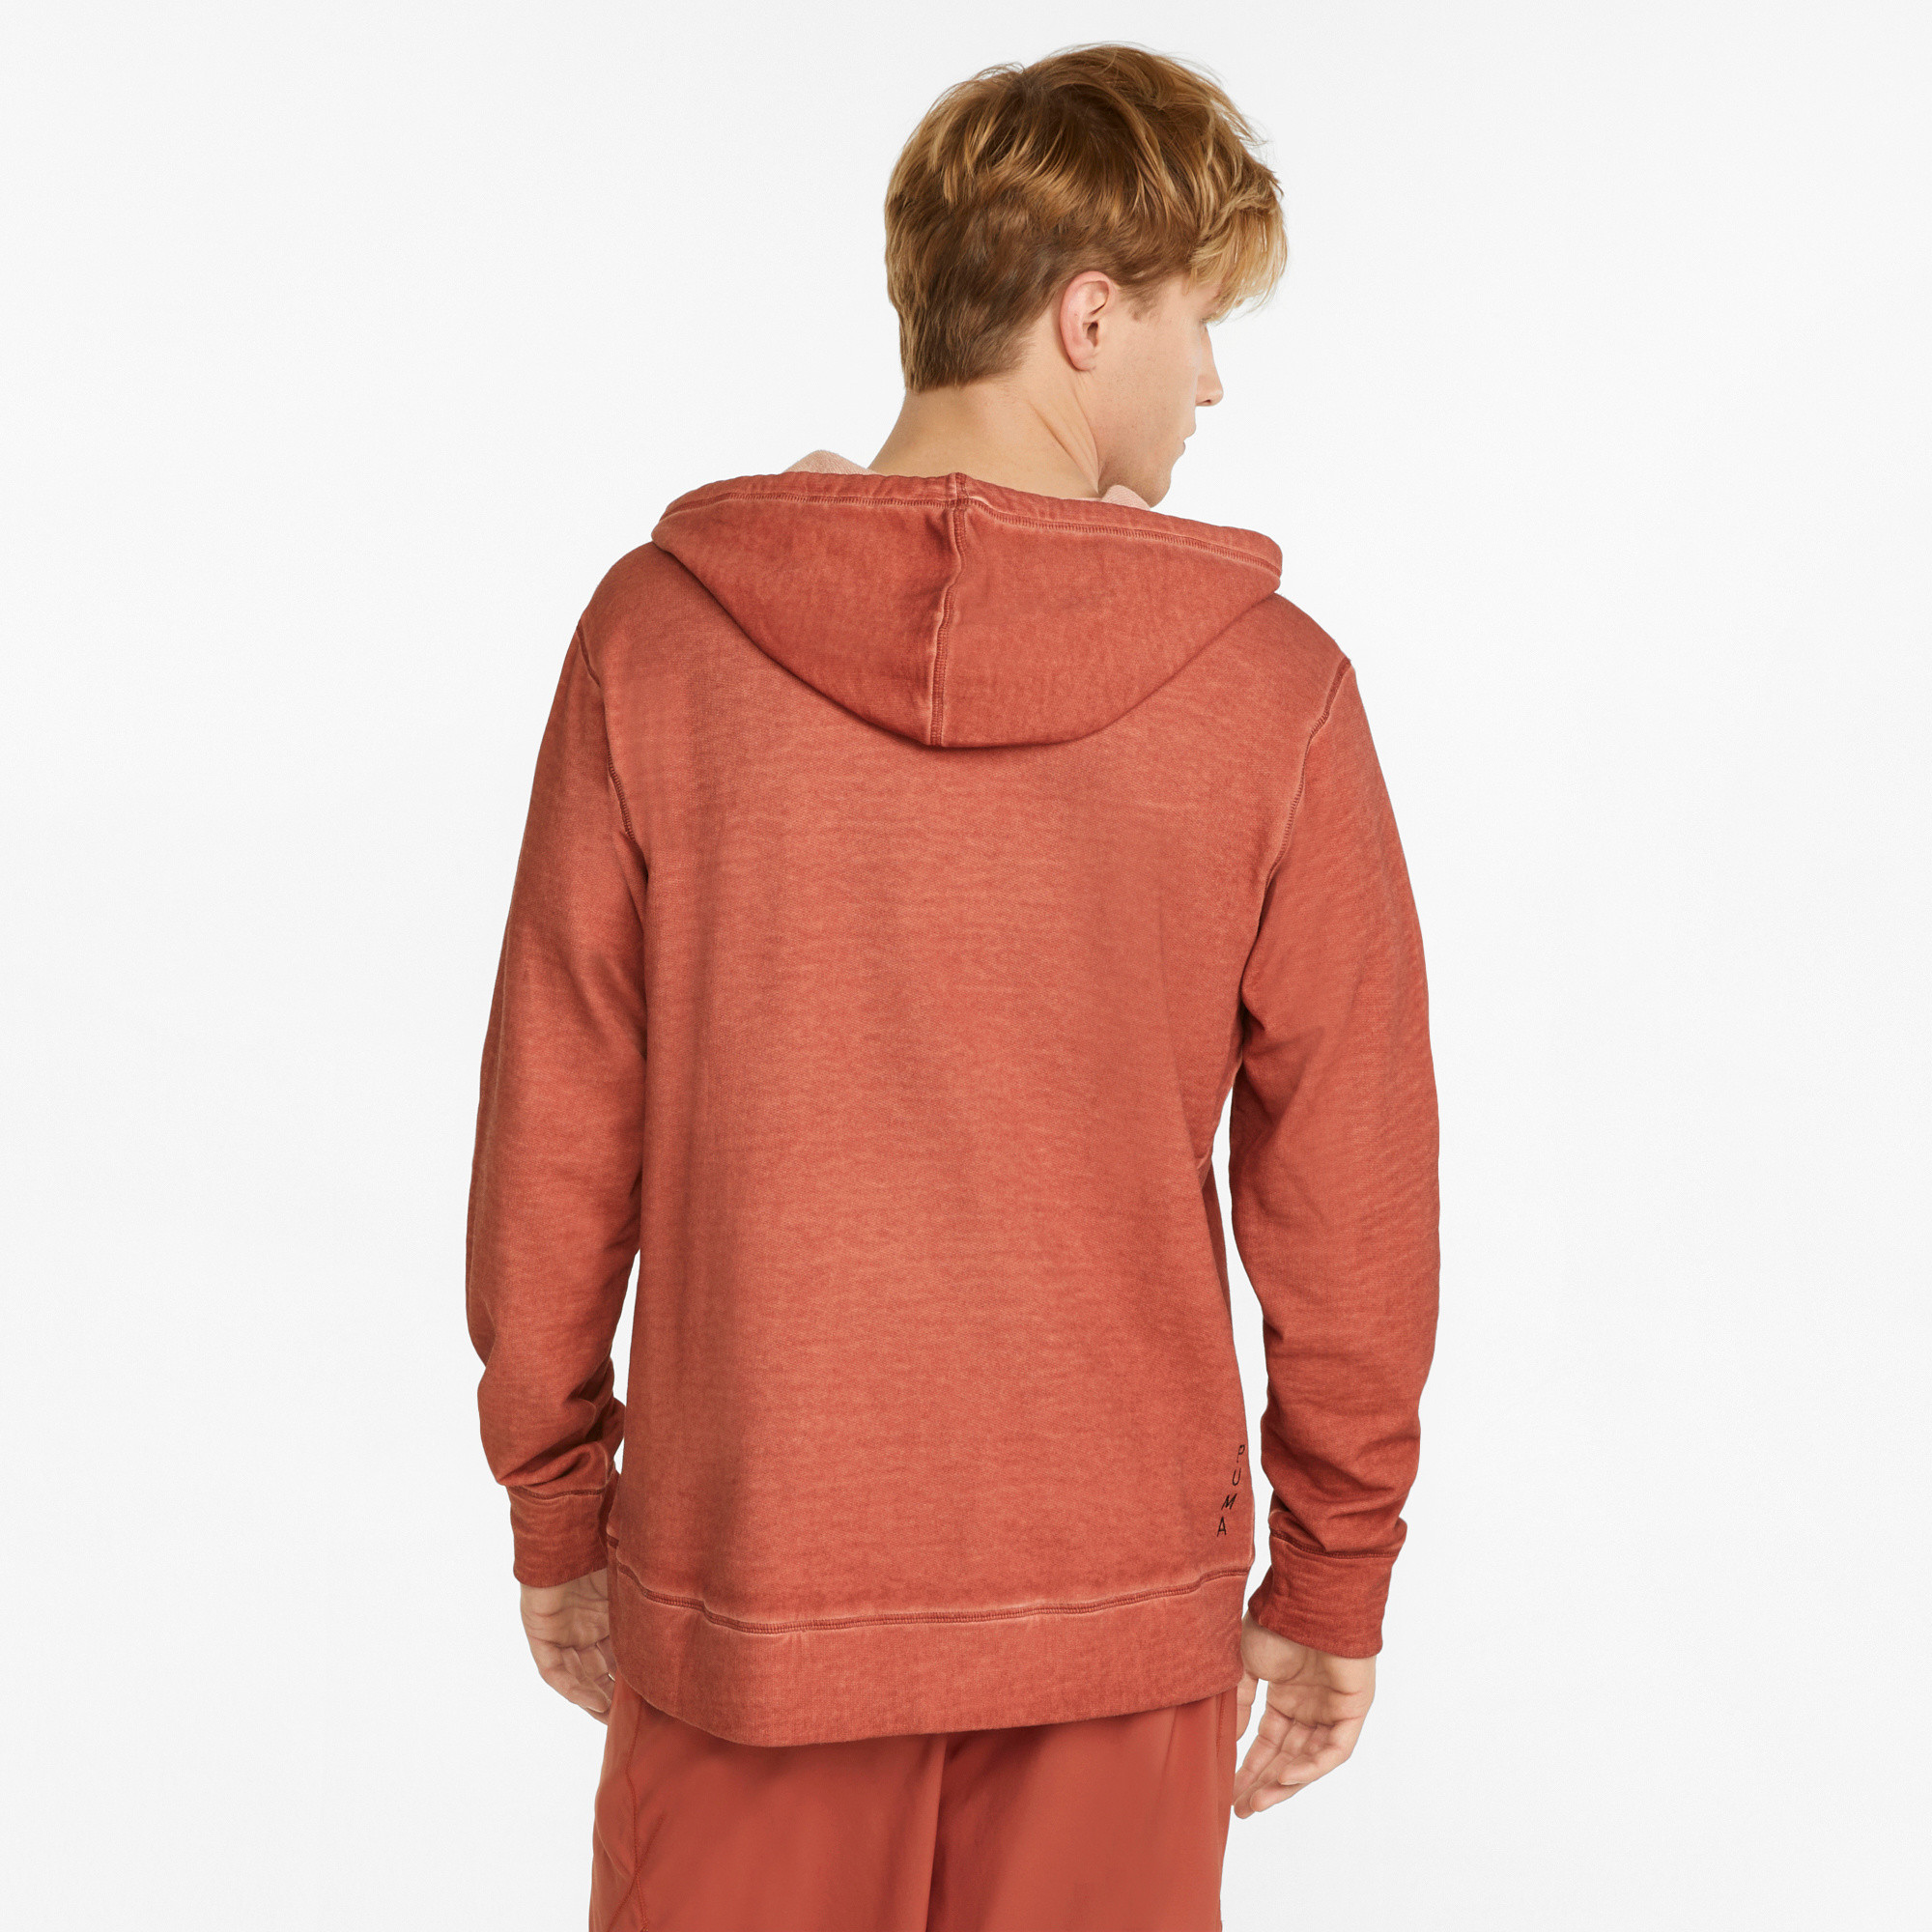 Yoga Hoodie, Light Orange, large image number 3